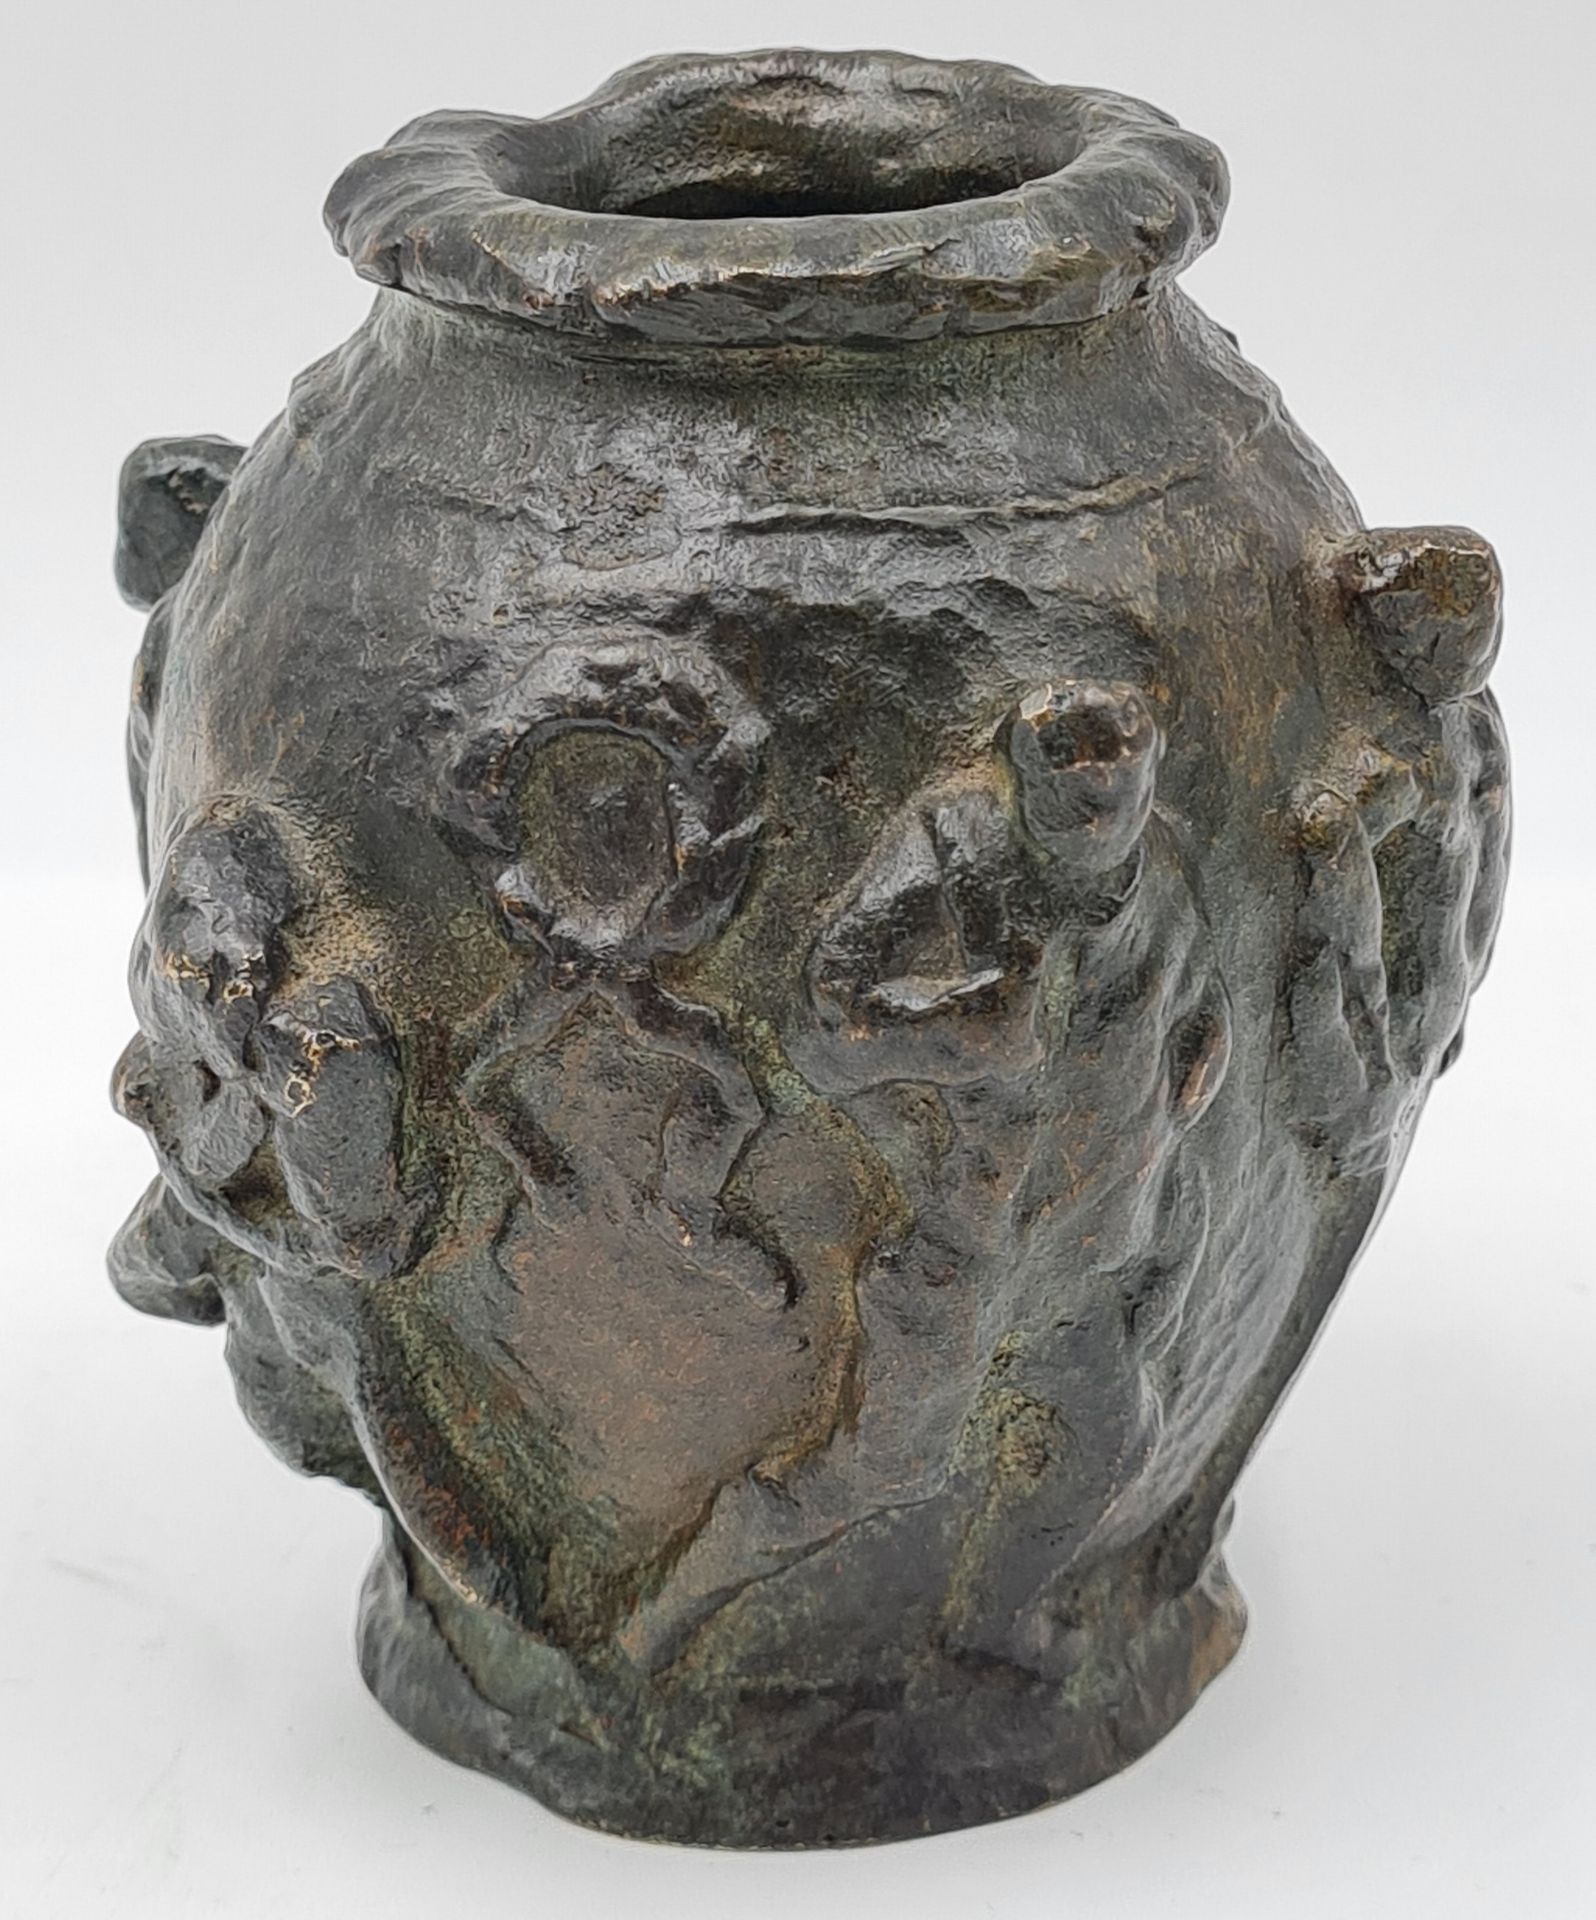 Null 一件具有棕色铜锈和古董风格的小铜瓶，高浮雕装饰着一个由人物组成的战争场景，下面有一个印记和 "法国 "和 "青铜 "字样，19世纪，高10厘米。